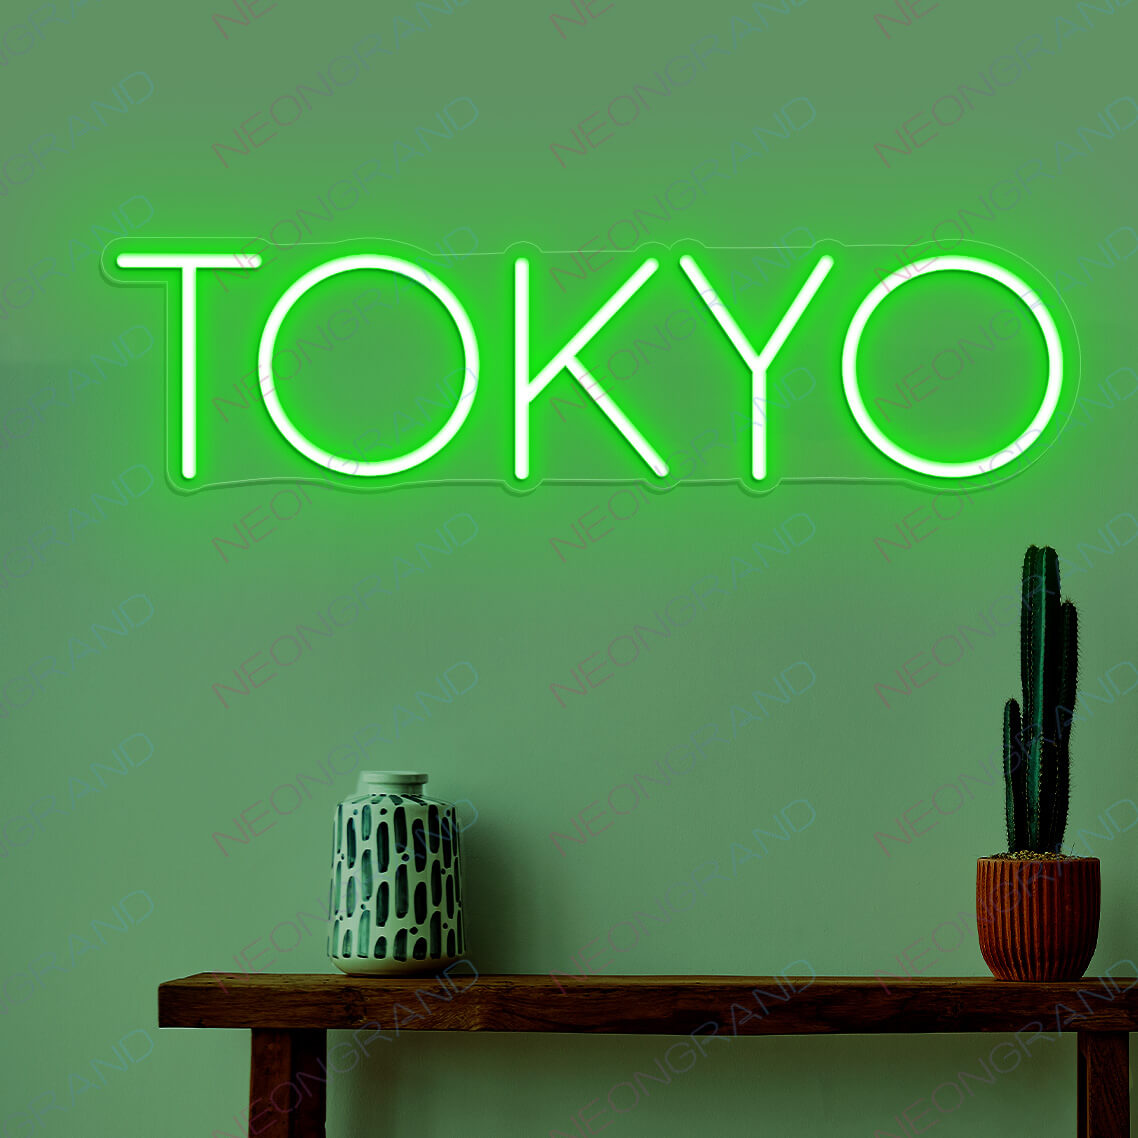 "Tokyo Enseigne au néon Lumière LED Japonaise"